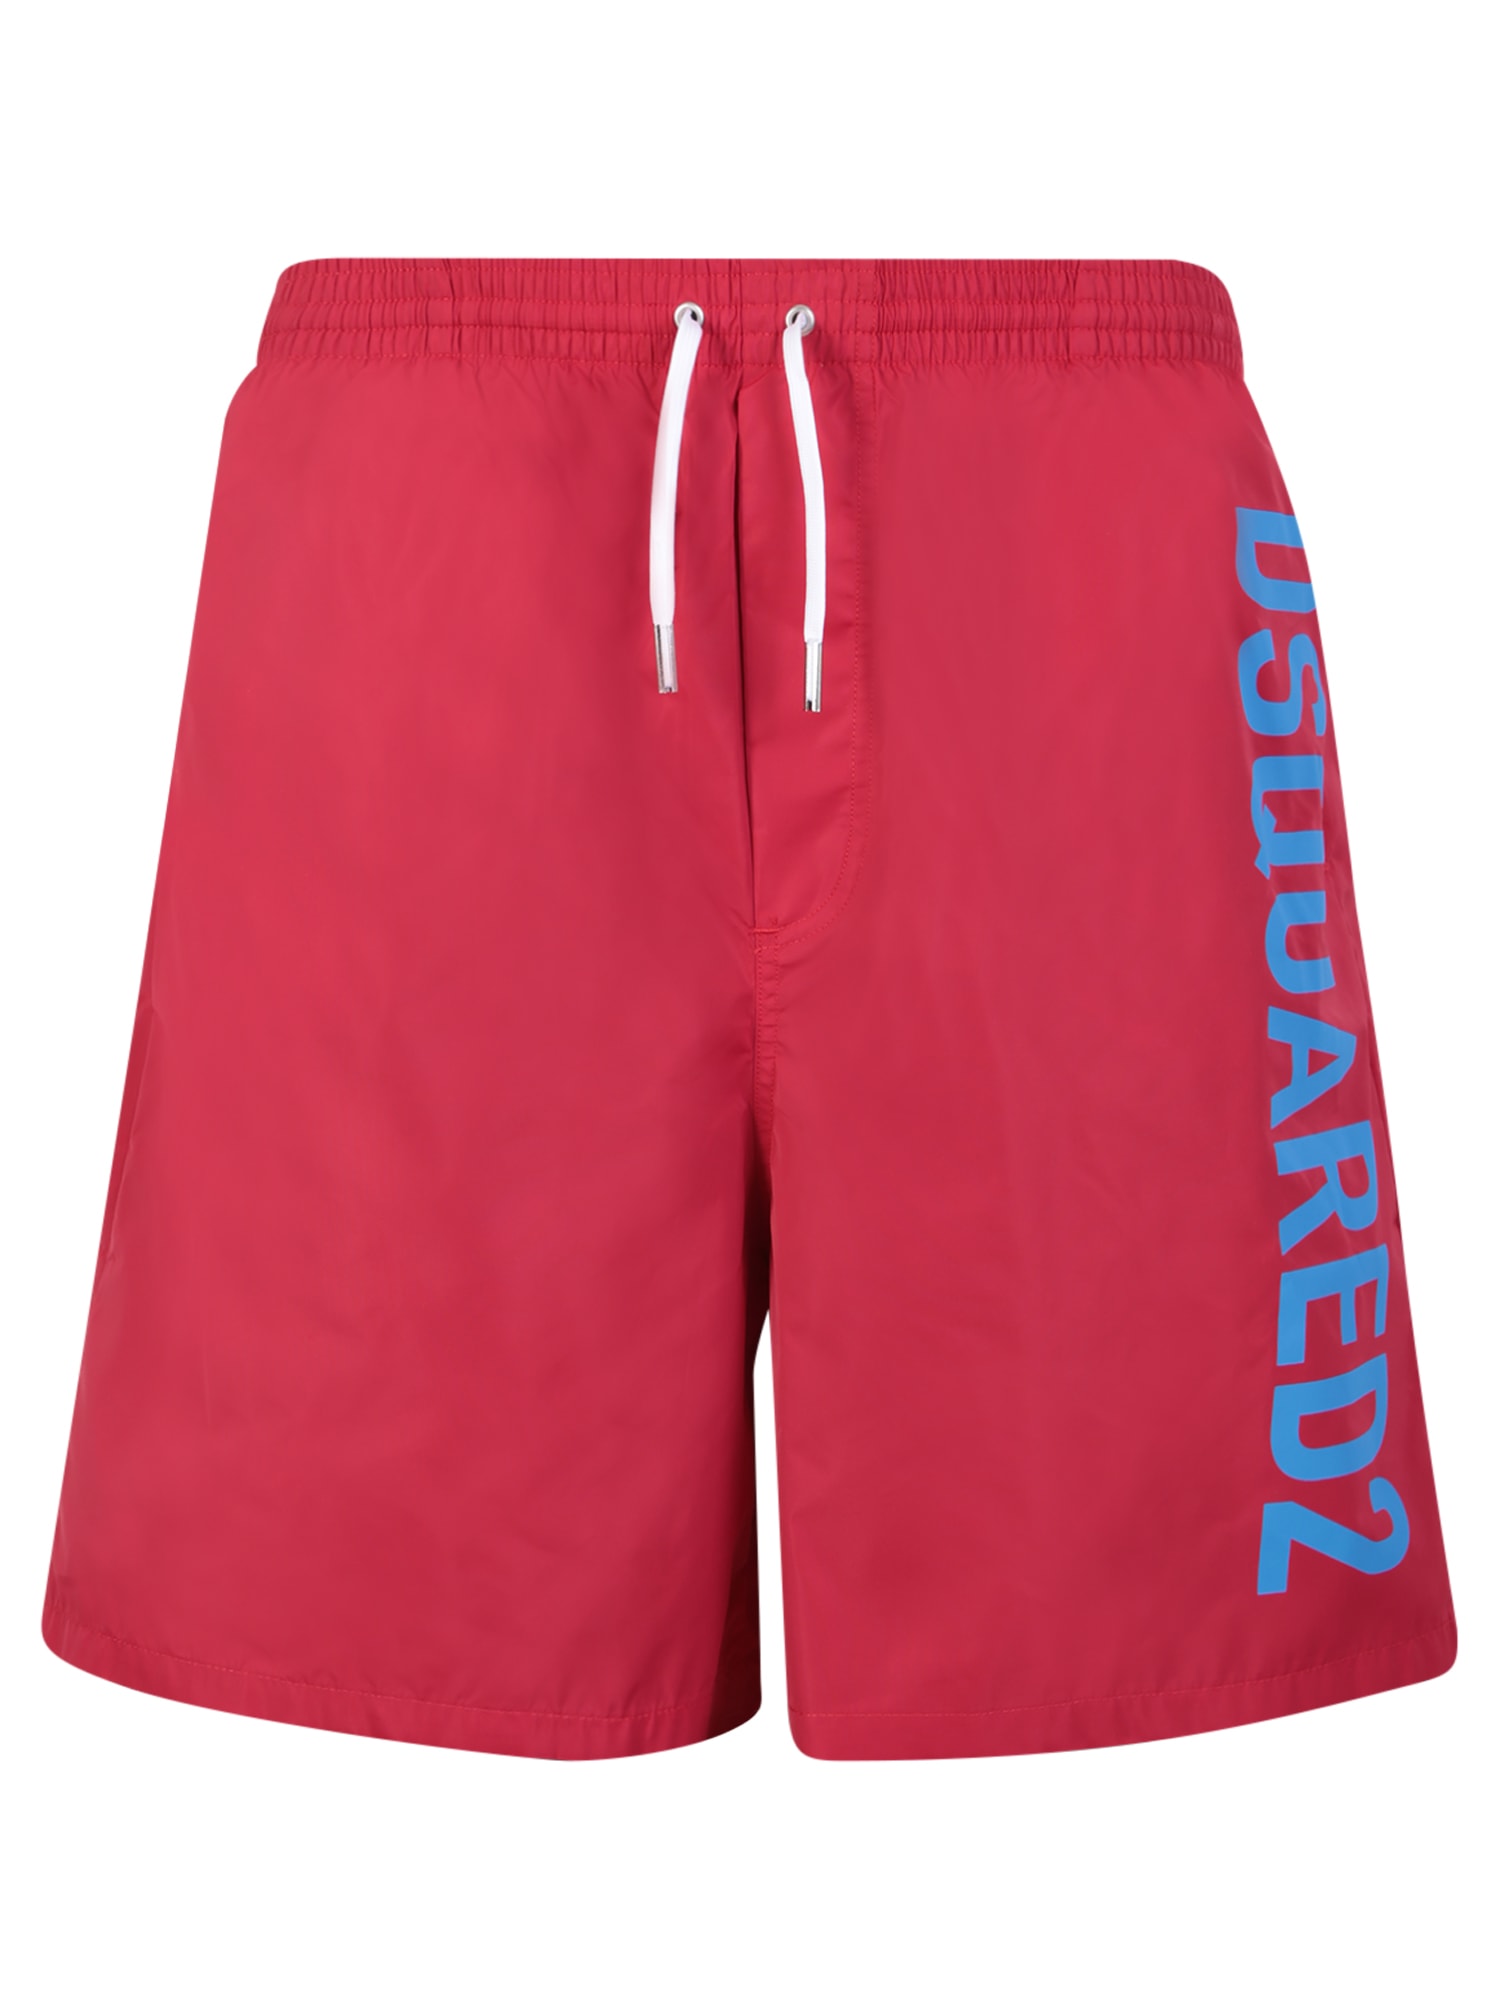 Red Technicolor Swim Shorts